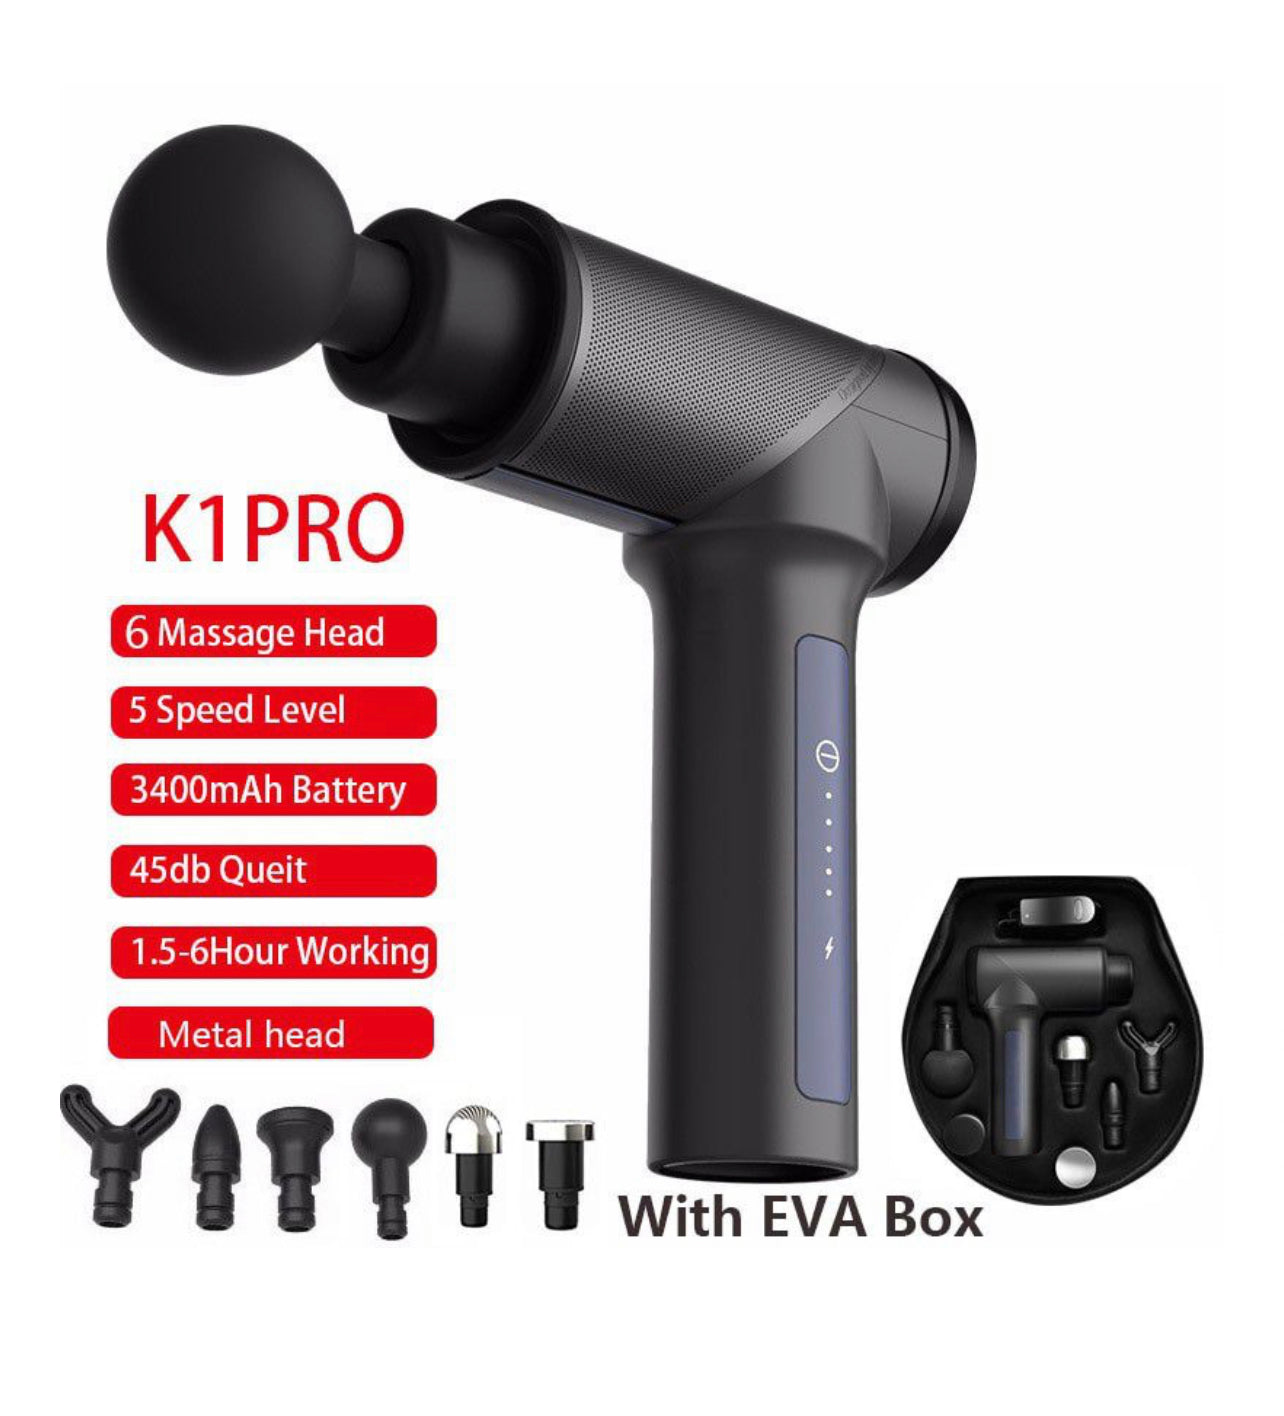 K1 Pro Portable Percussion Massage Gun with 6 Attachments